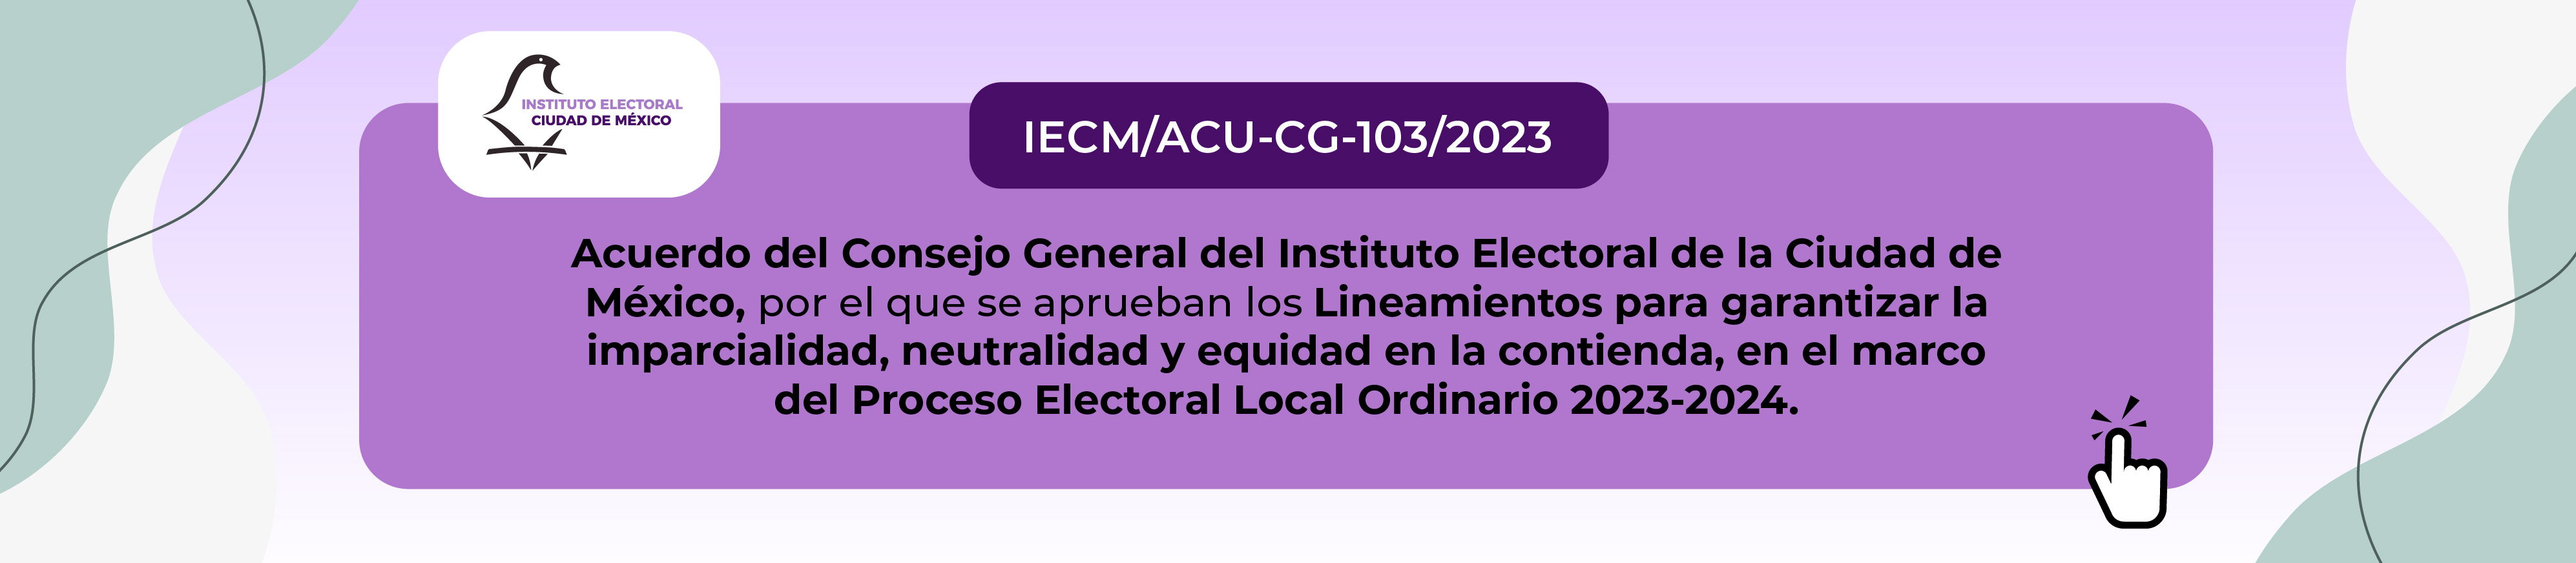 Acuerdo IECM-ACU-CG-103-2023